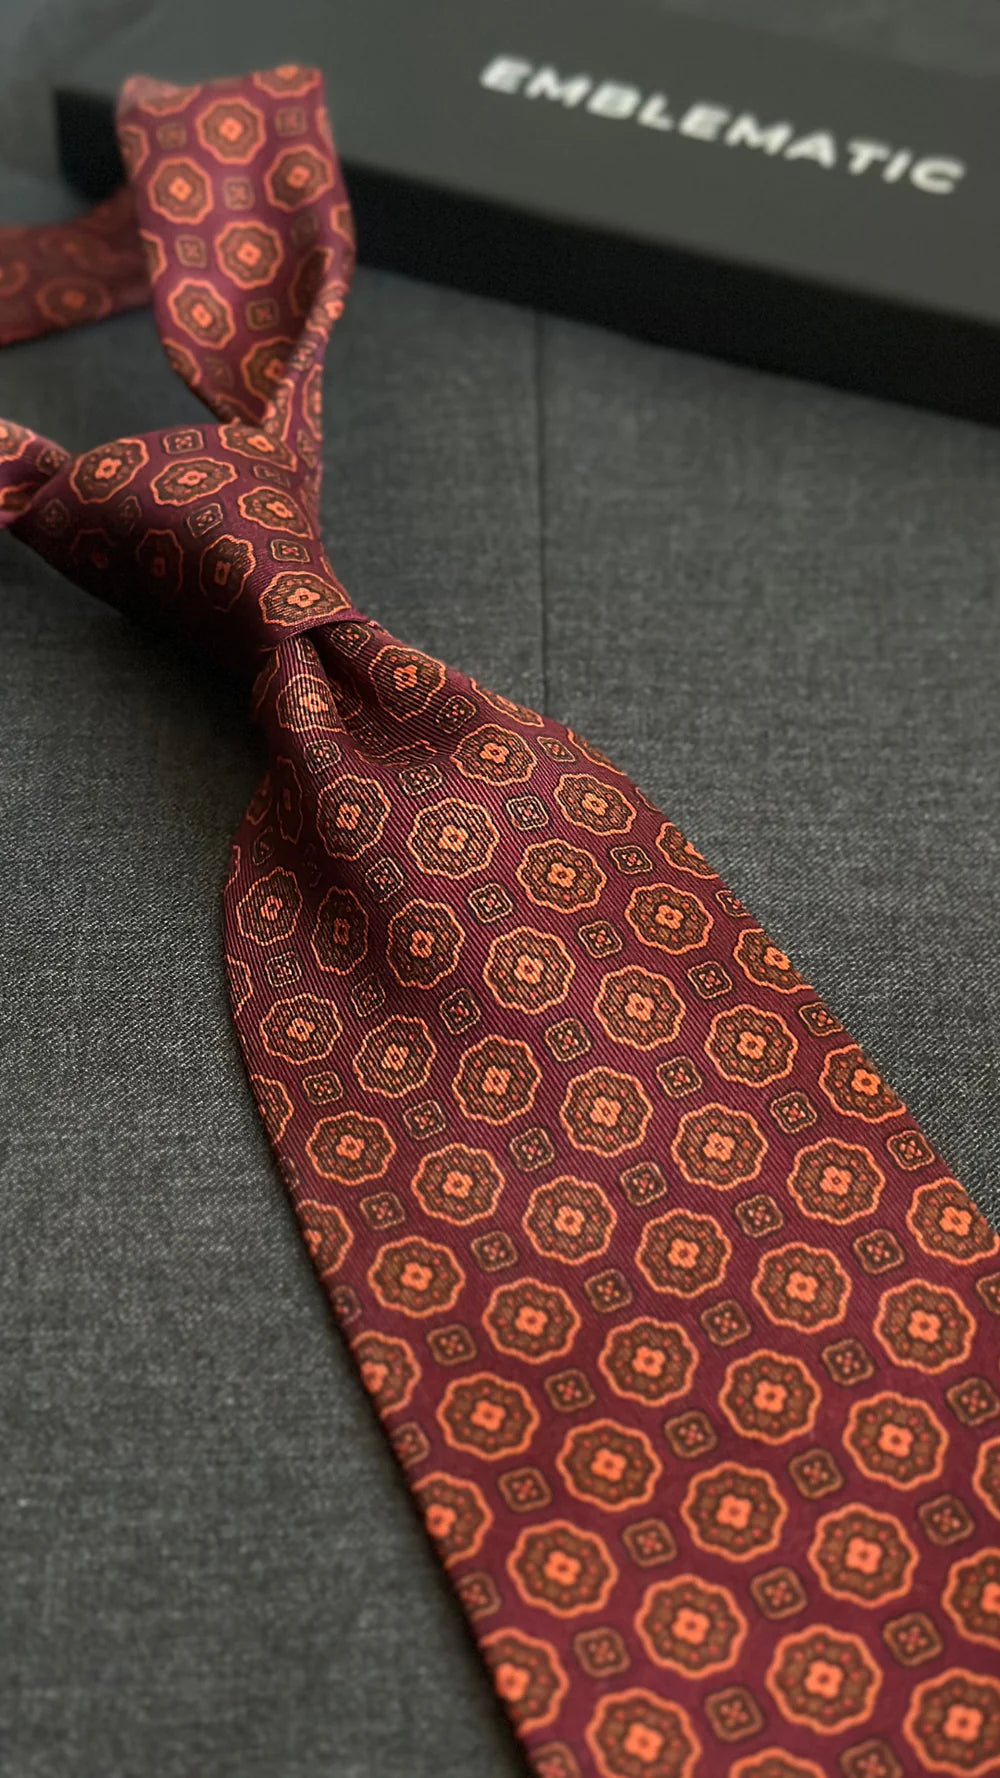 Corbata Emblematic burdeos geométricos rosetas